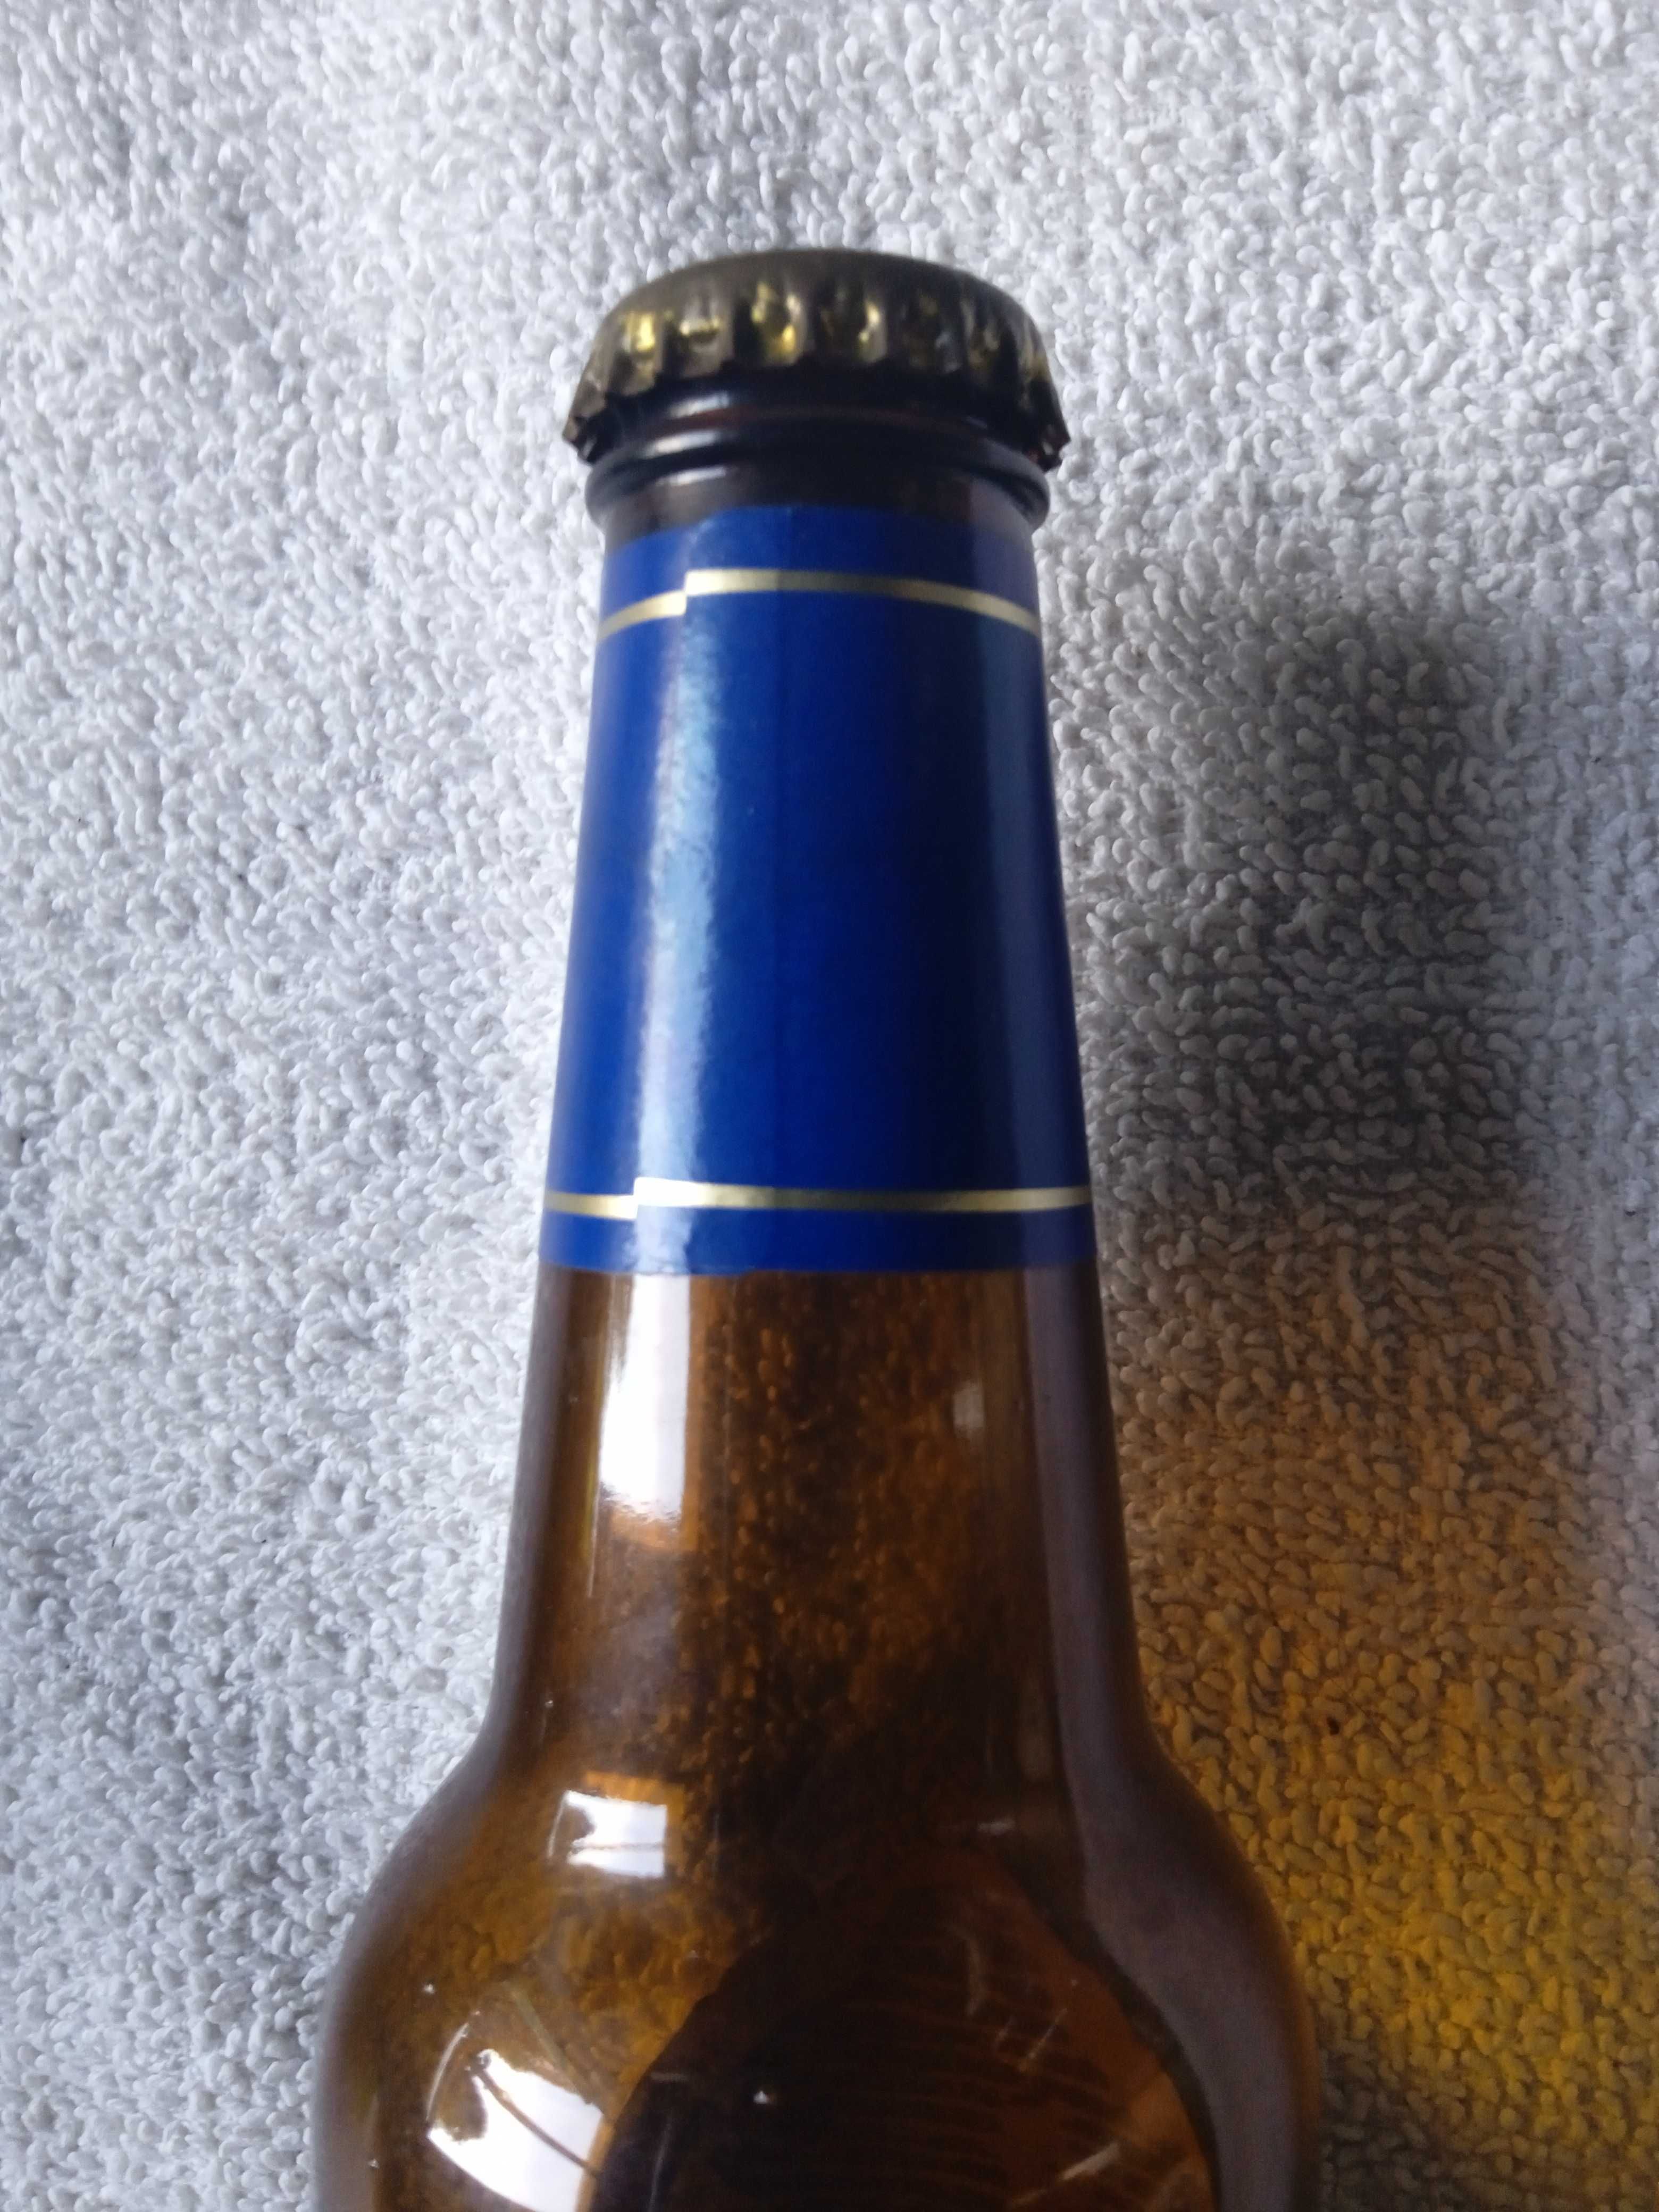 Butelka 0,33 l. Żywiec 2002 r.